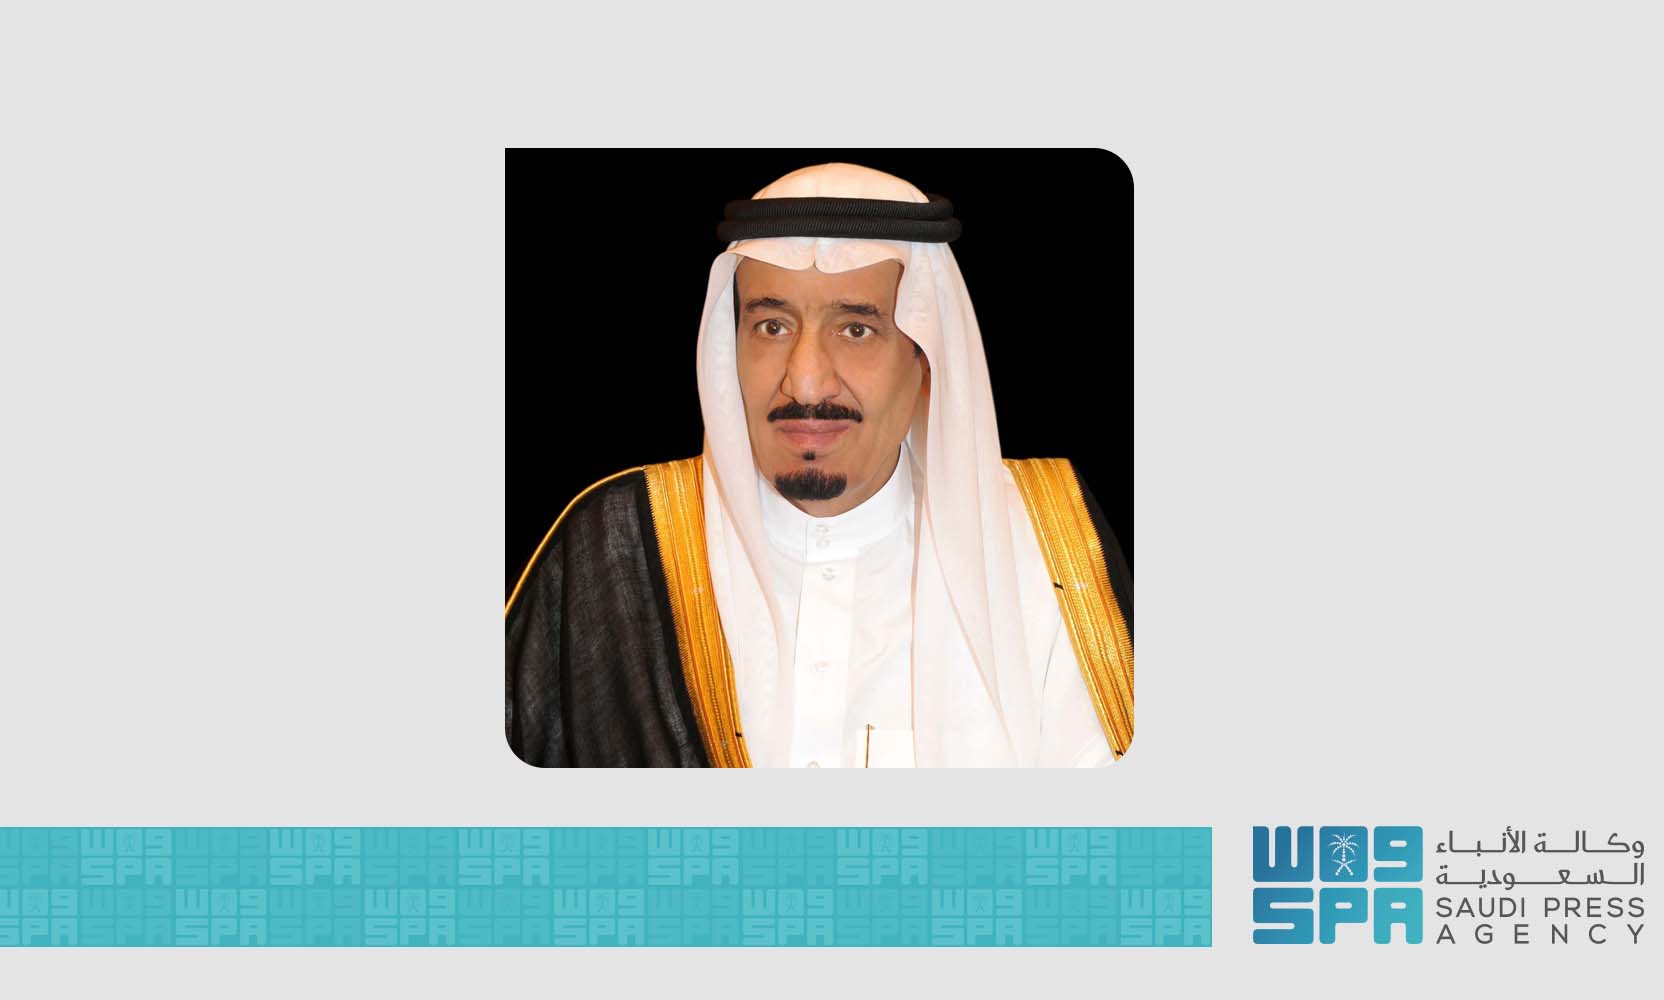 أمر ملكي: إعفاء وزير الصحة الدكتور توفيق الربيعة من منصبه